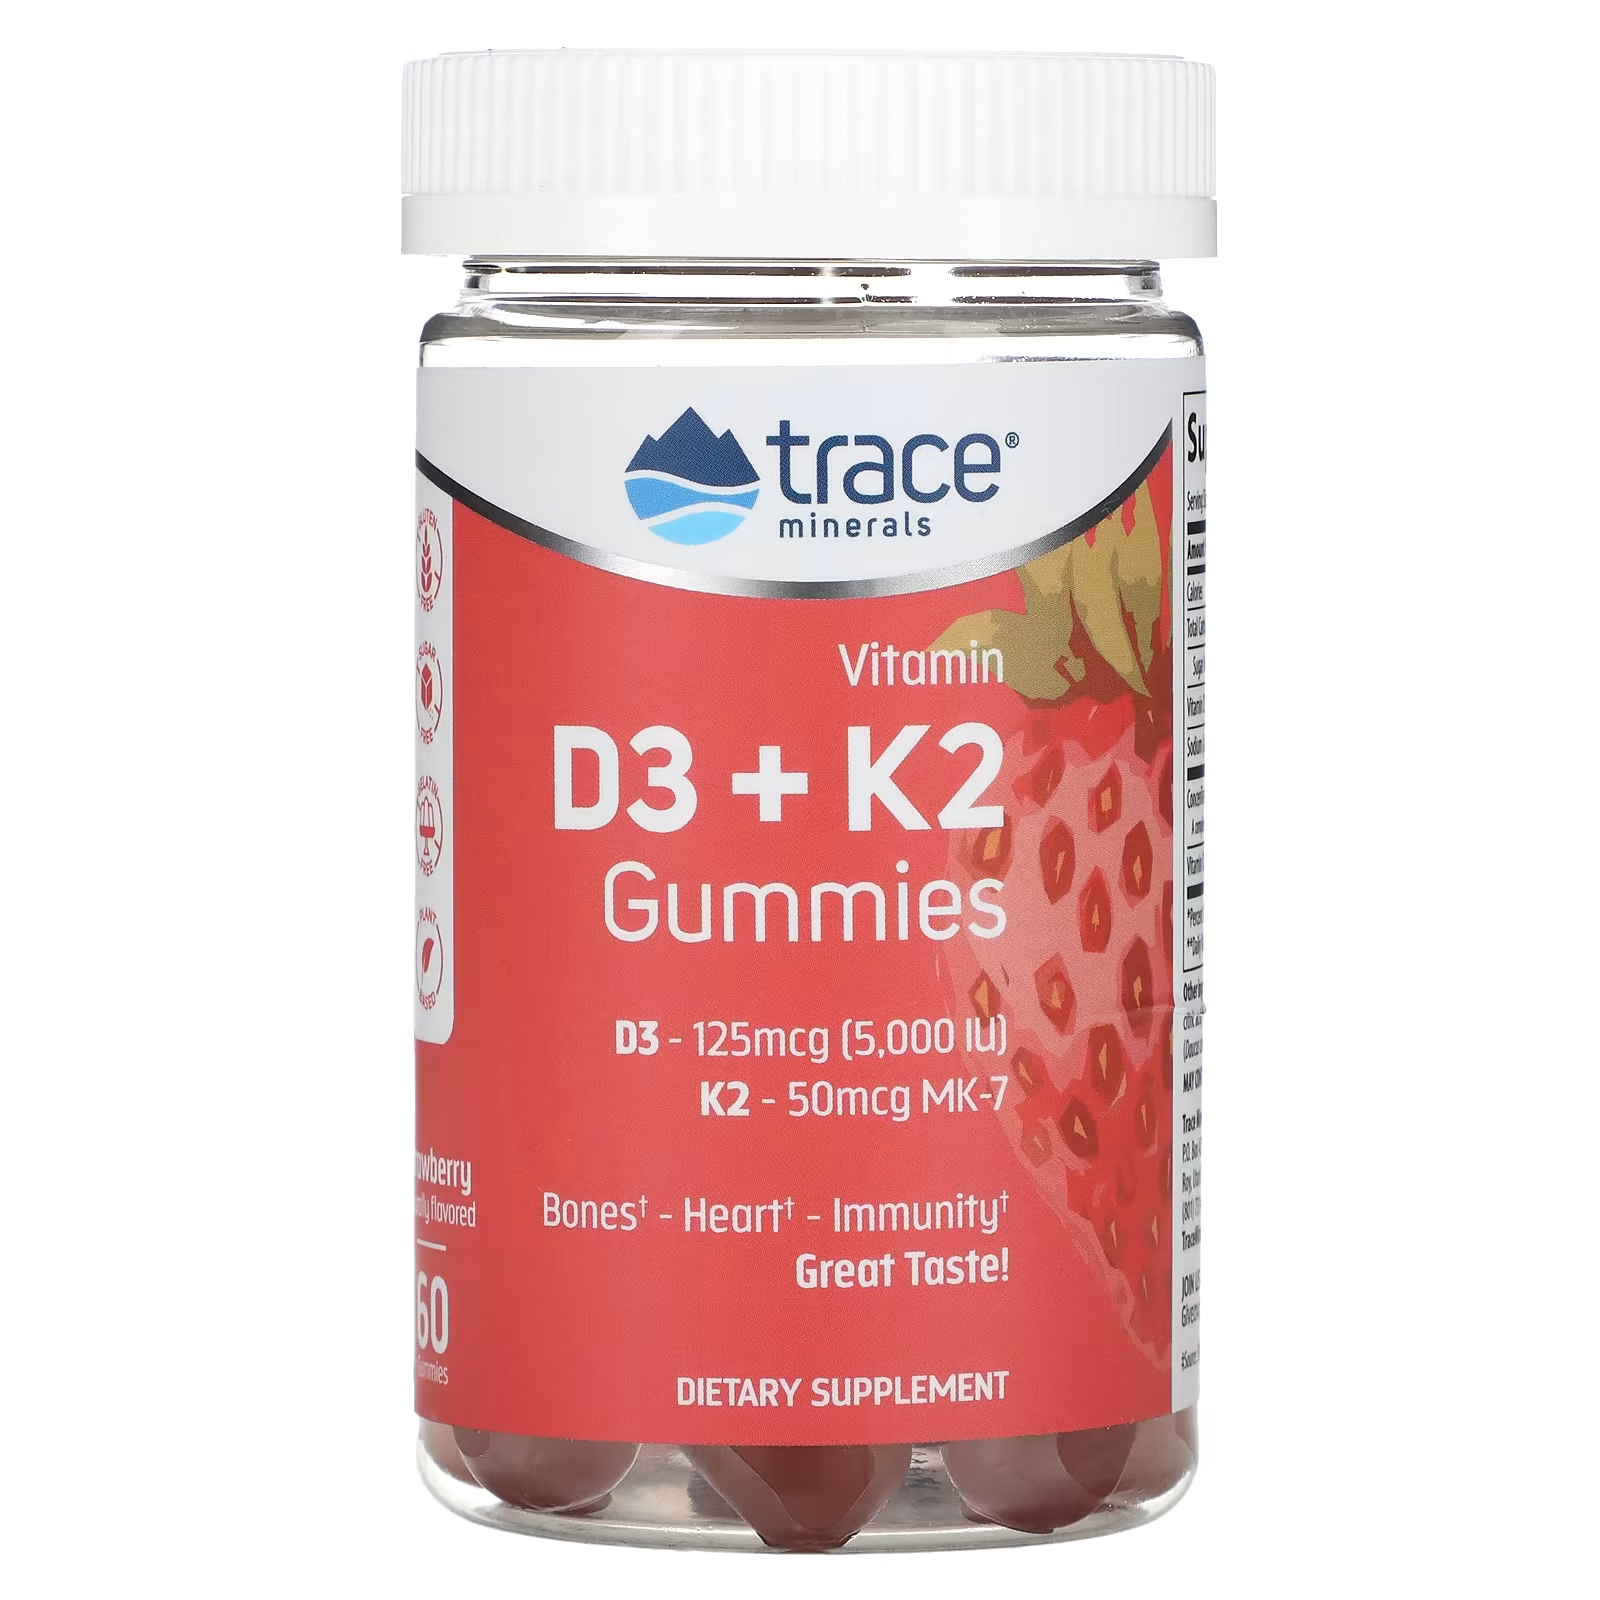 Жевательные конфеты Trace Minerals с витамином D3 + K2 клубника, 60 таблеток